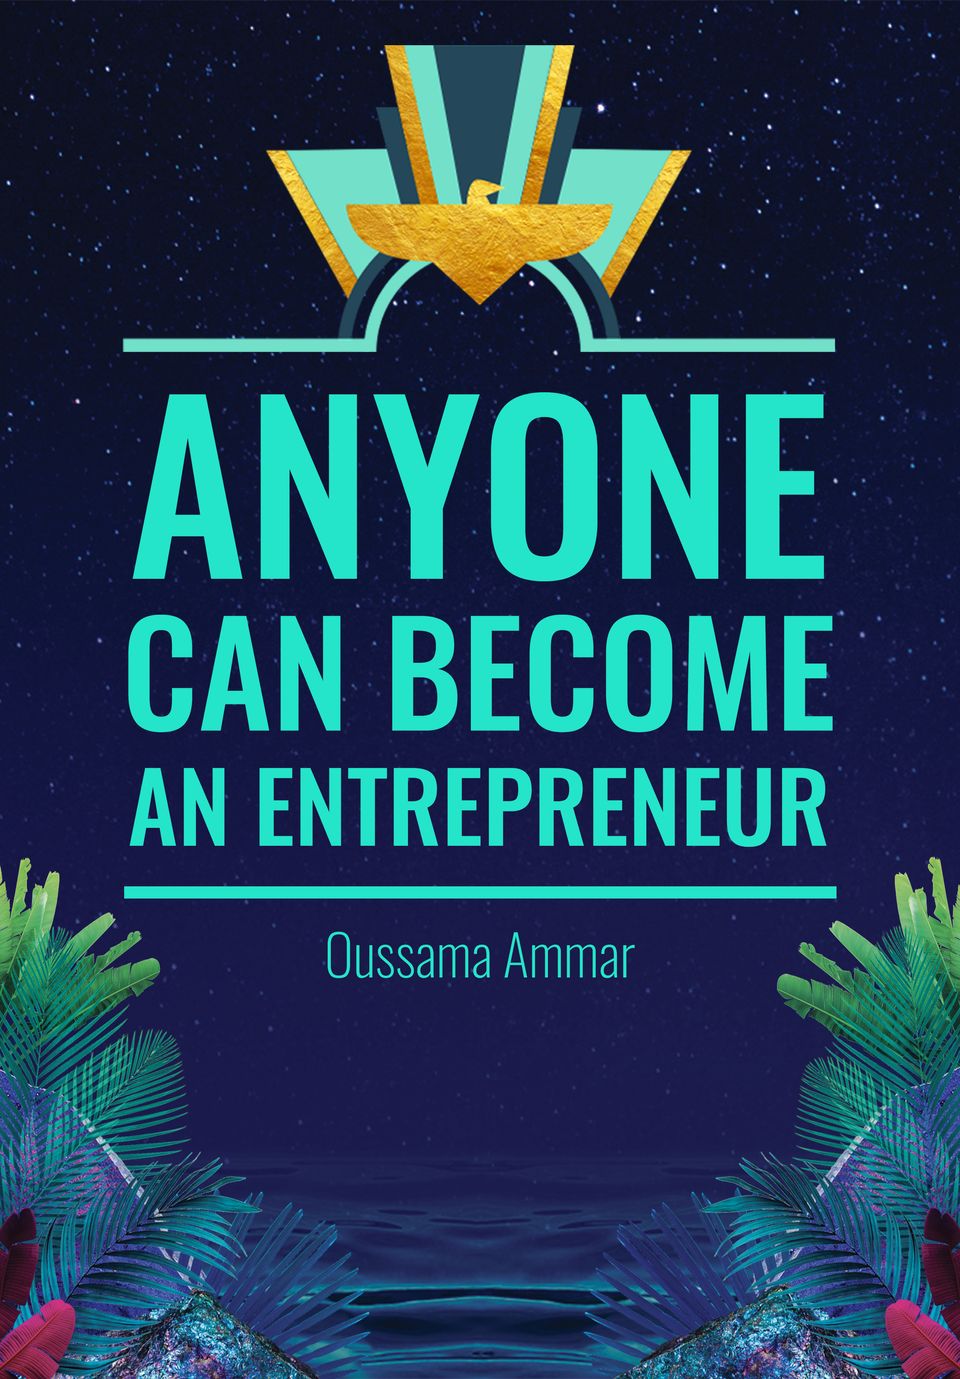 Anyone can become an Entrepreneur!